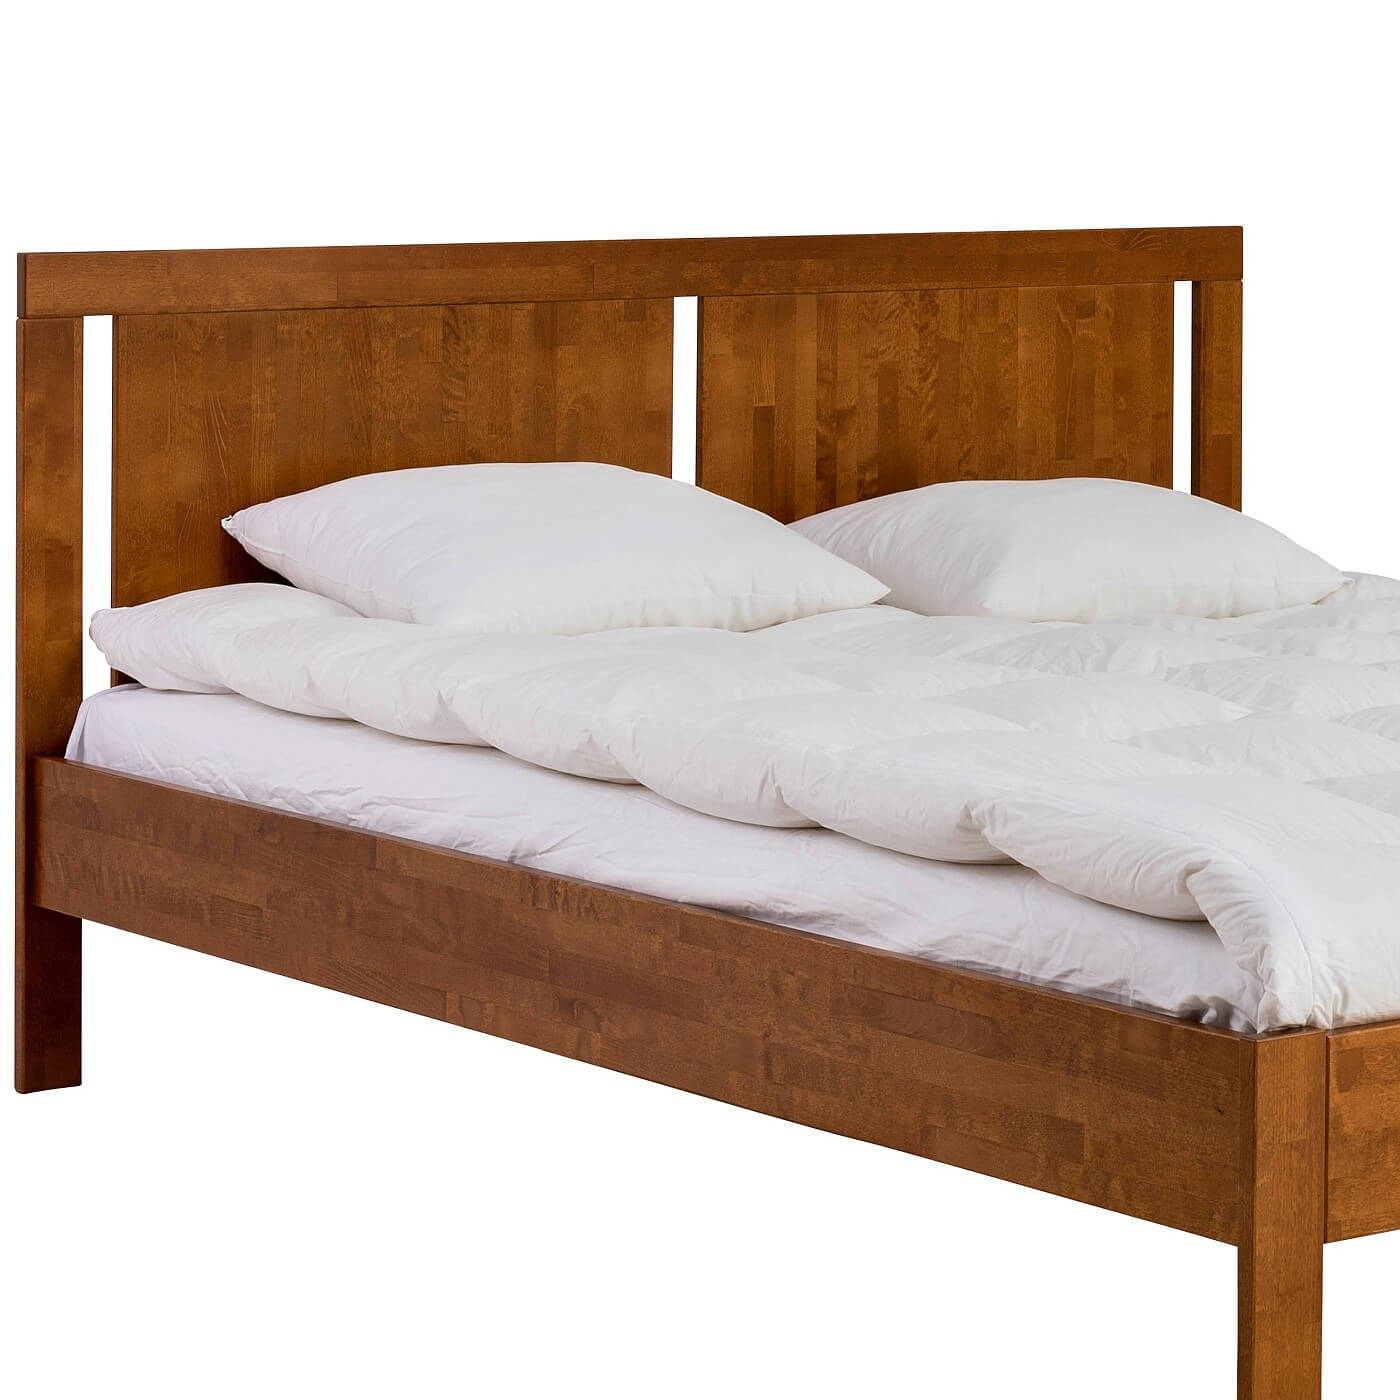 Łóżko dwuosobowe drewniane KOLI. Fragment łóżka 160x200 z nóżkami i z wysokim wezgłowiem z drewna brzozy północnej lakierowanej na kolor orzech. Na 2 osobowym drewnianym łóżku kolor orzech leży biały materac i biała pościel. Skandynawski design